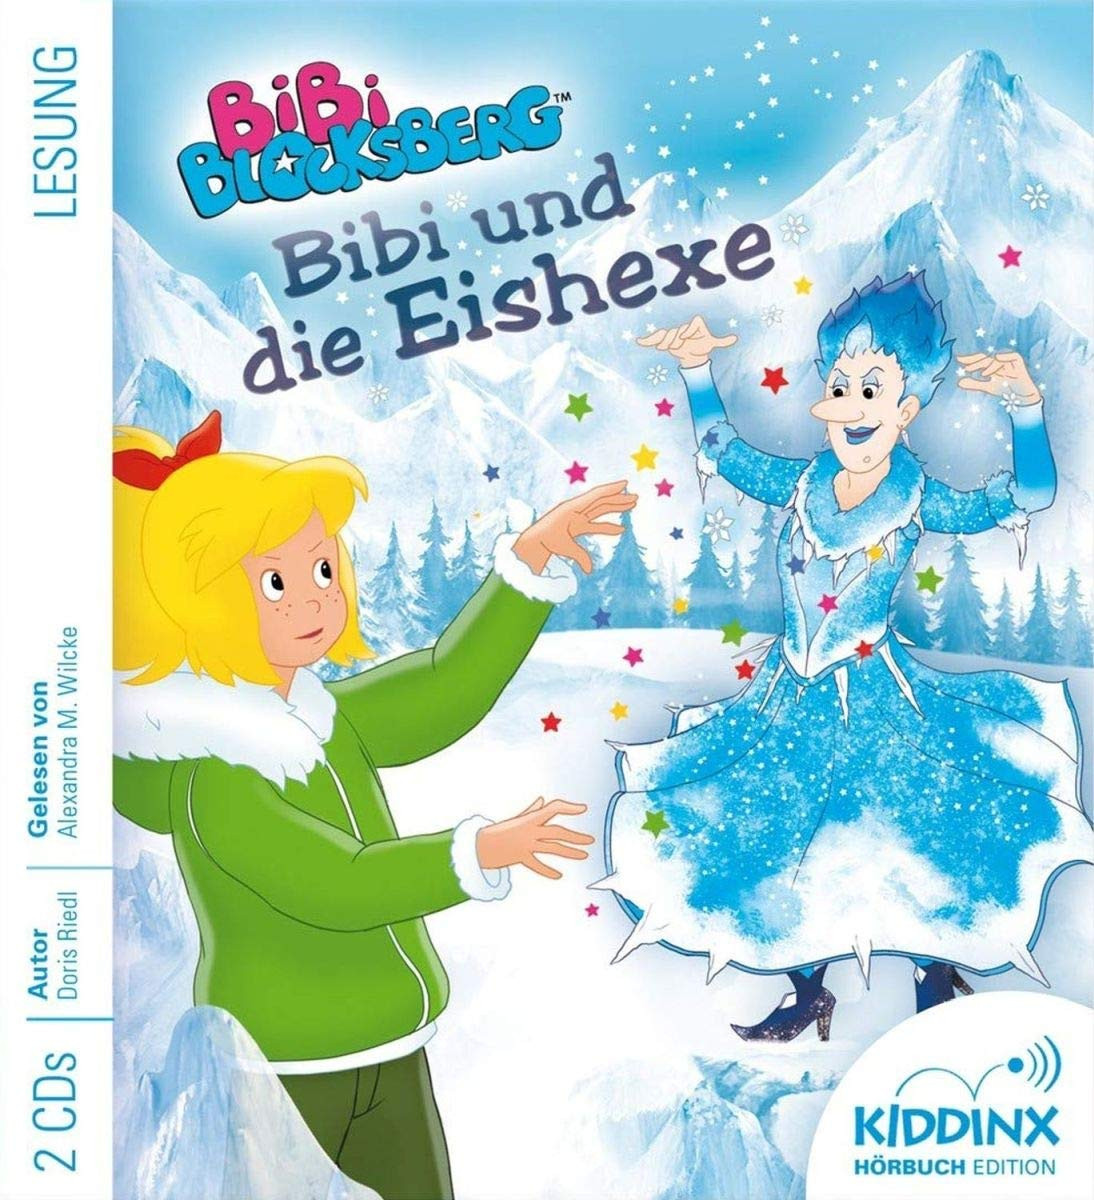 Bibi Blocksberg Hörbuch - Bibi und die Eishexe